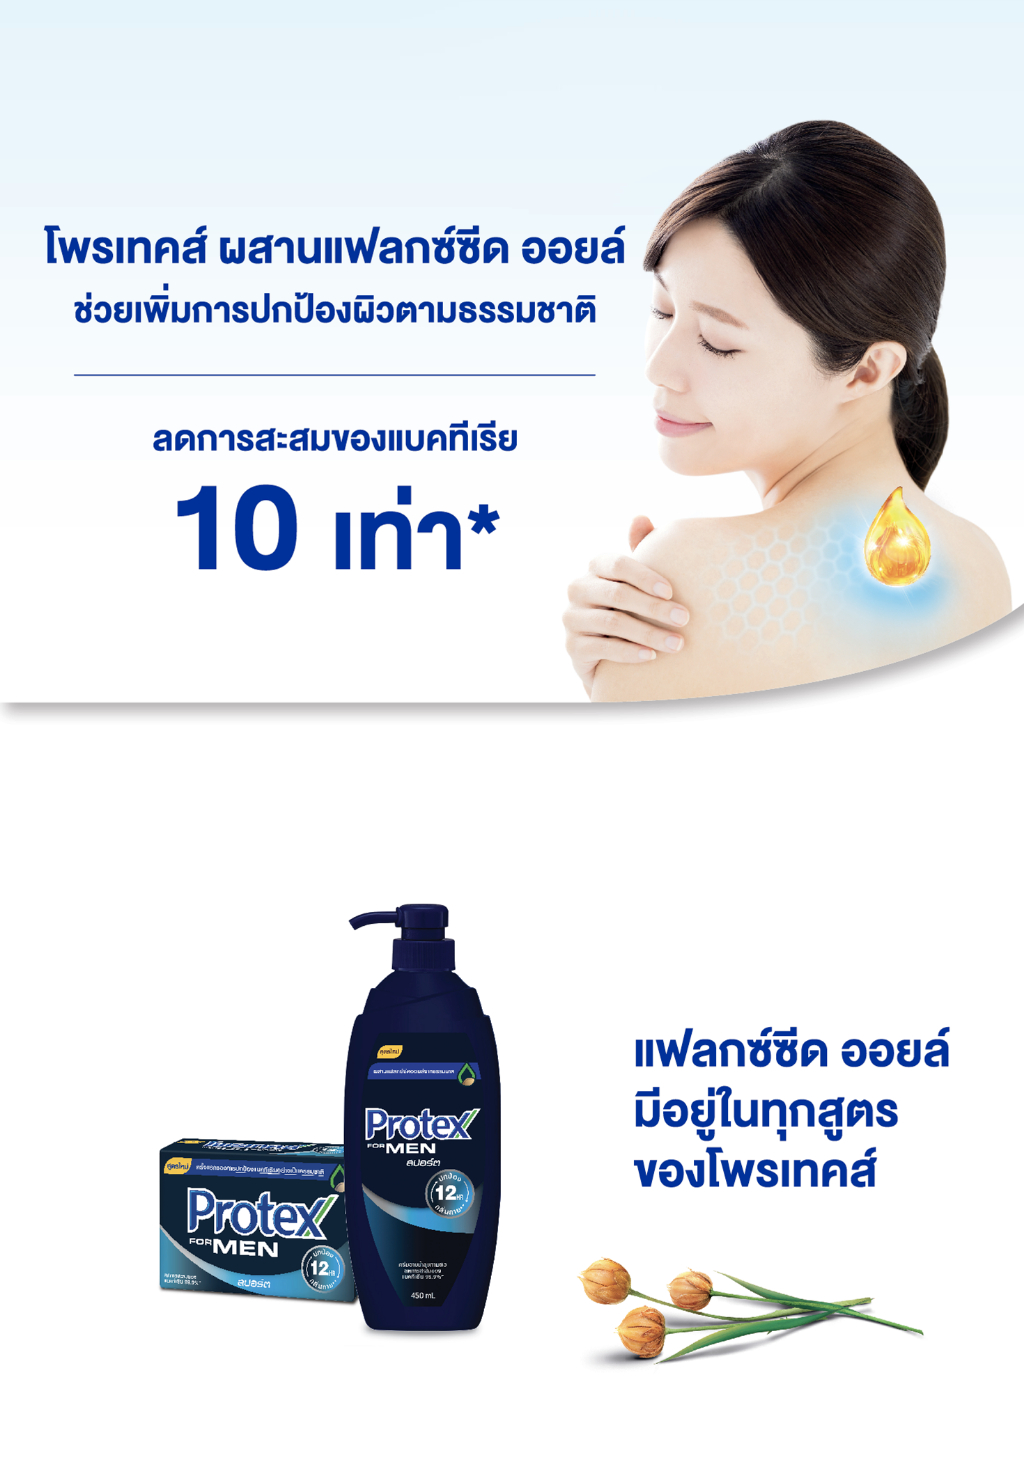 คำอธิบายเพิ่มเติมเกี่ยวกับ Protex โพรเทคส์ ฟอร์เมน สปอร์ต 450 มล. ขวดปั๊ม รวม 4 ขวด ให้ความรู้สึกสะอาดสดชื่น (ครีมอาบน้ำ) Protex For Men Sport Shower Cream 450 ml Pump x4